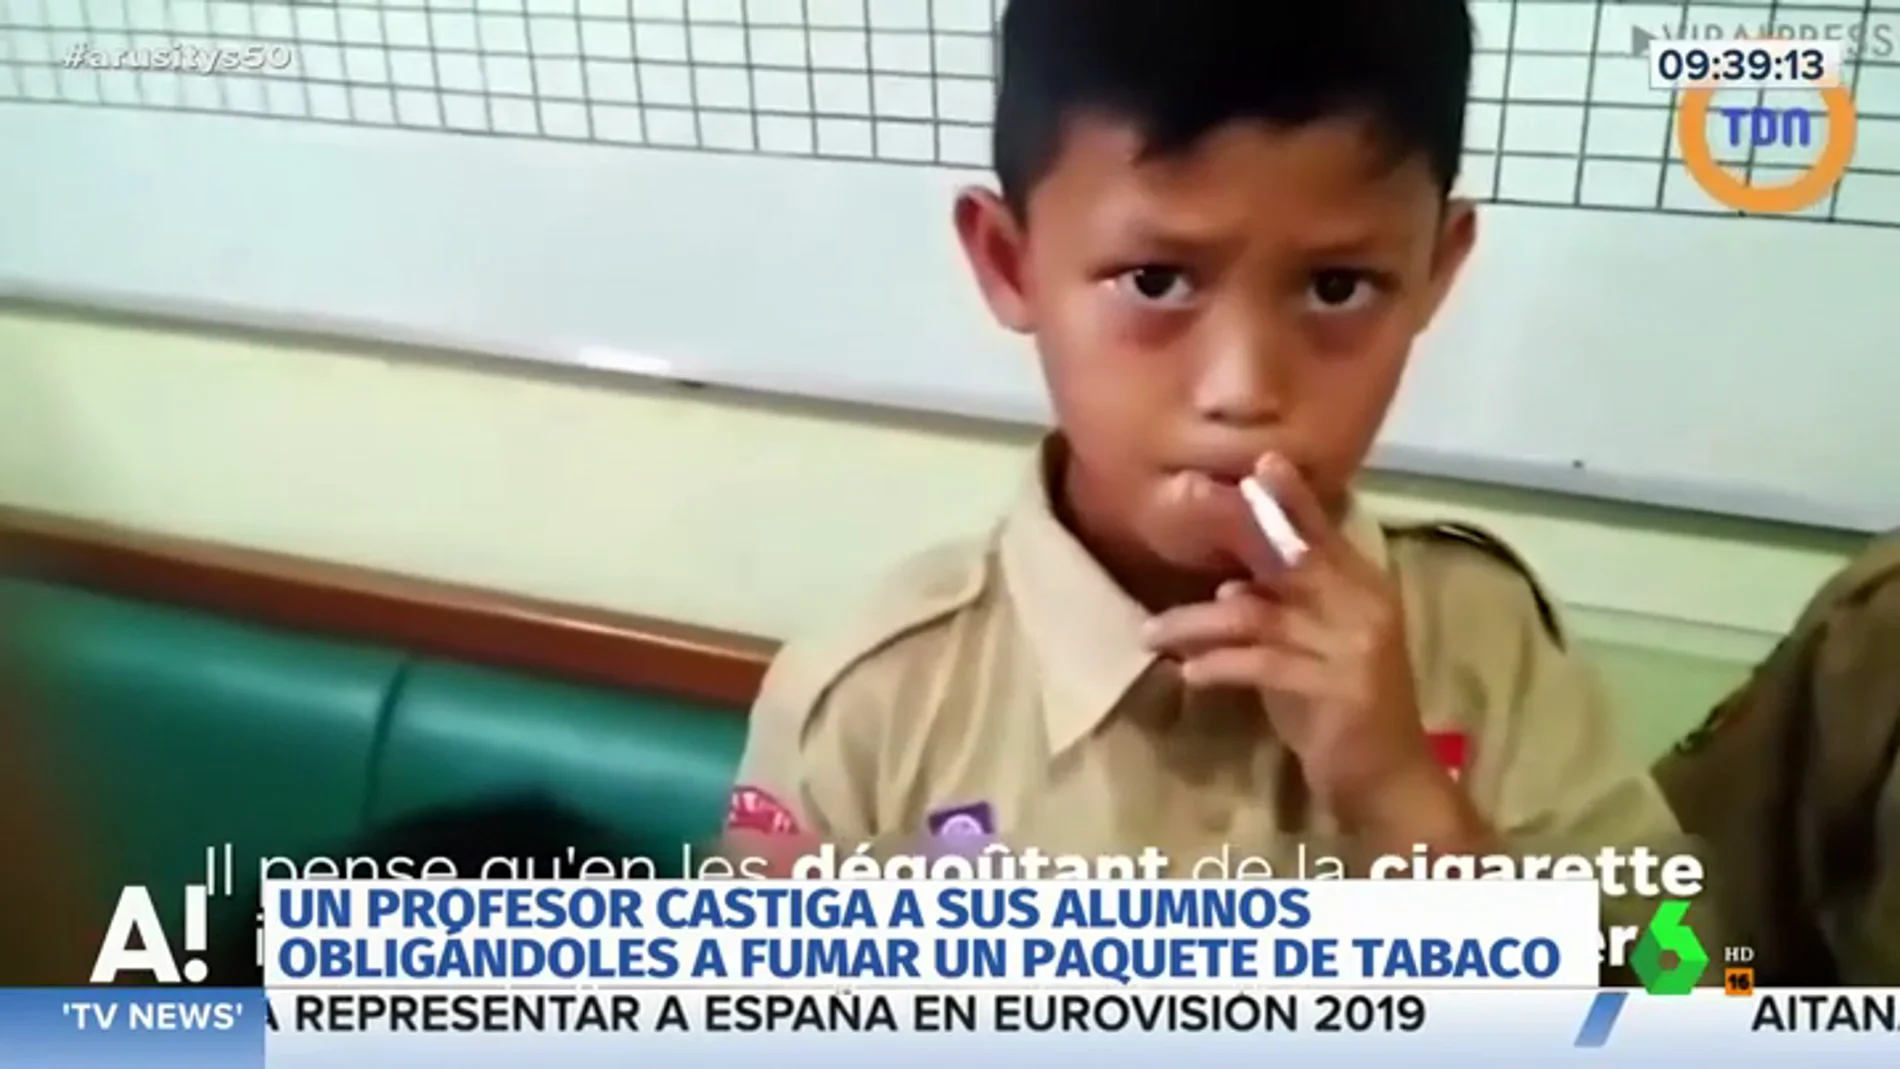 Obliga a sus alumnos a fumar un paquete de tabaco